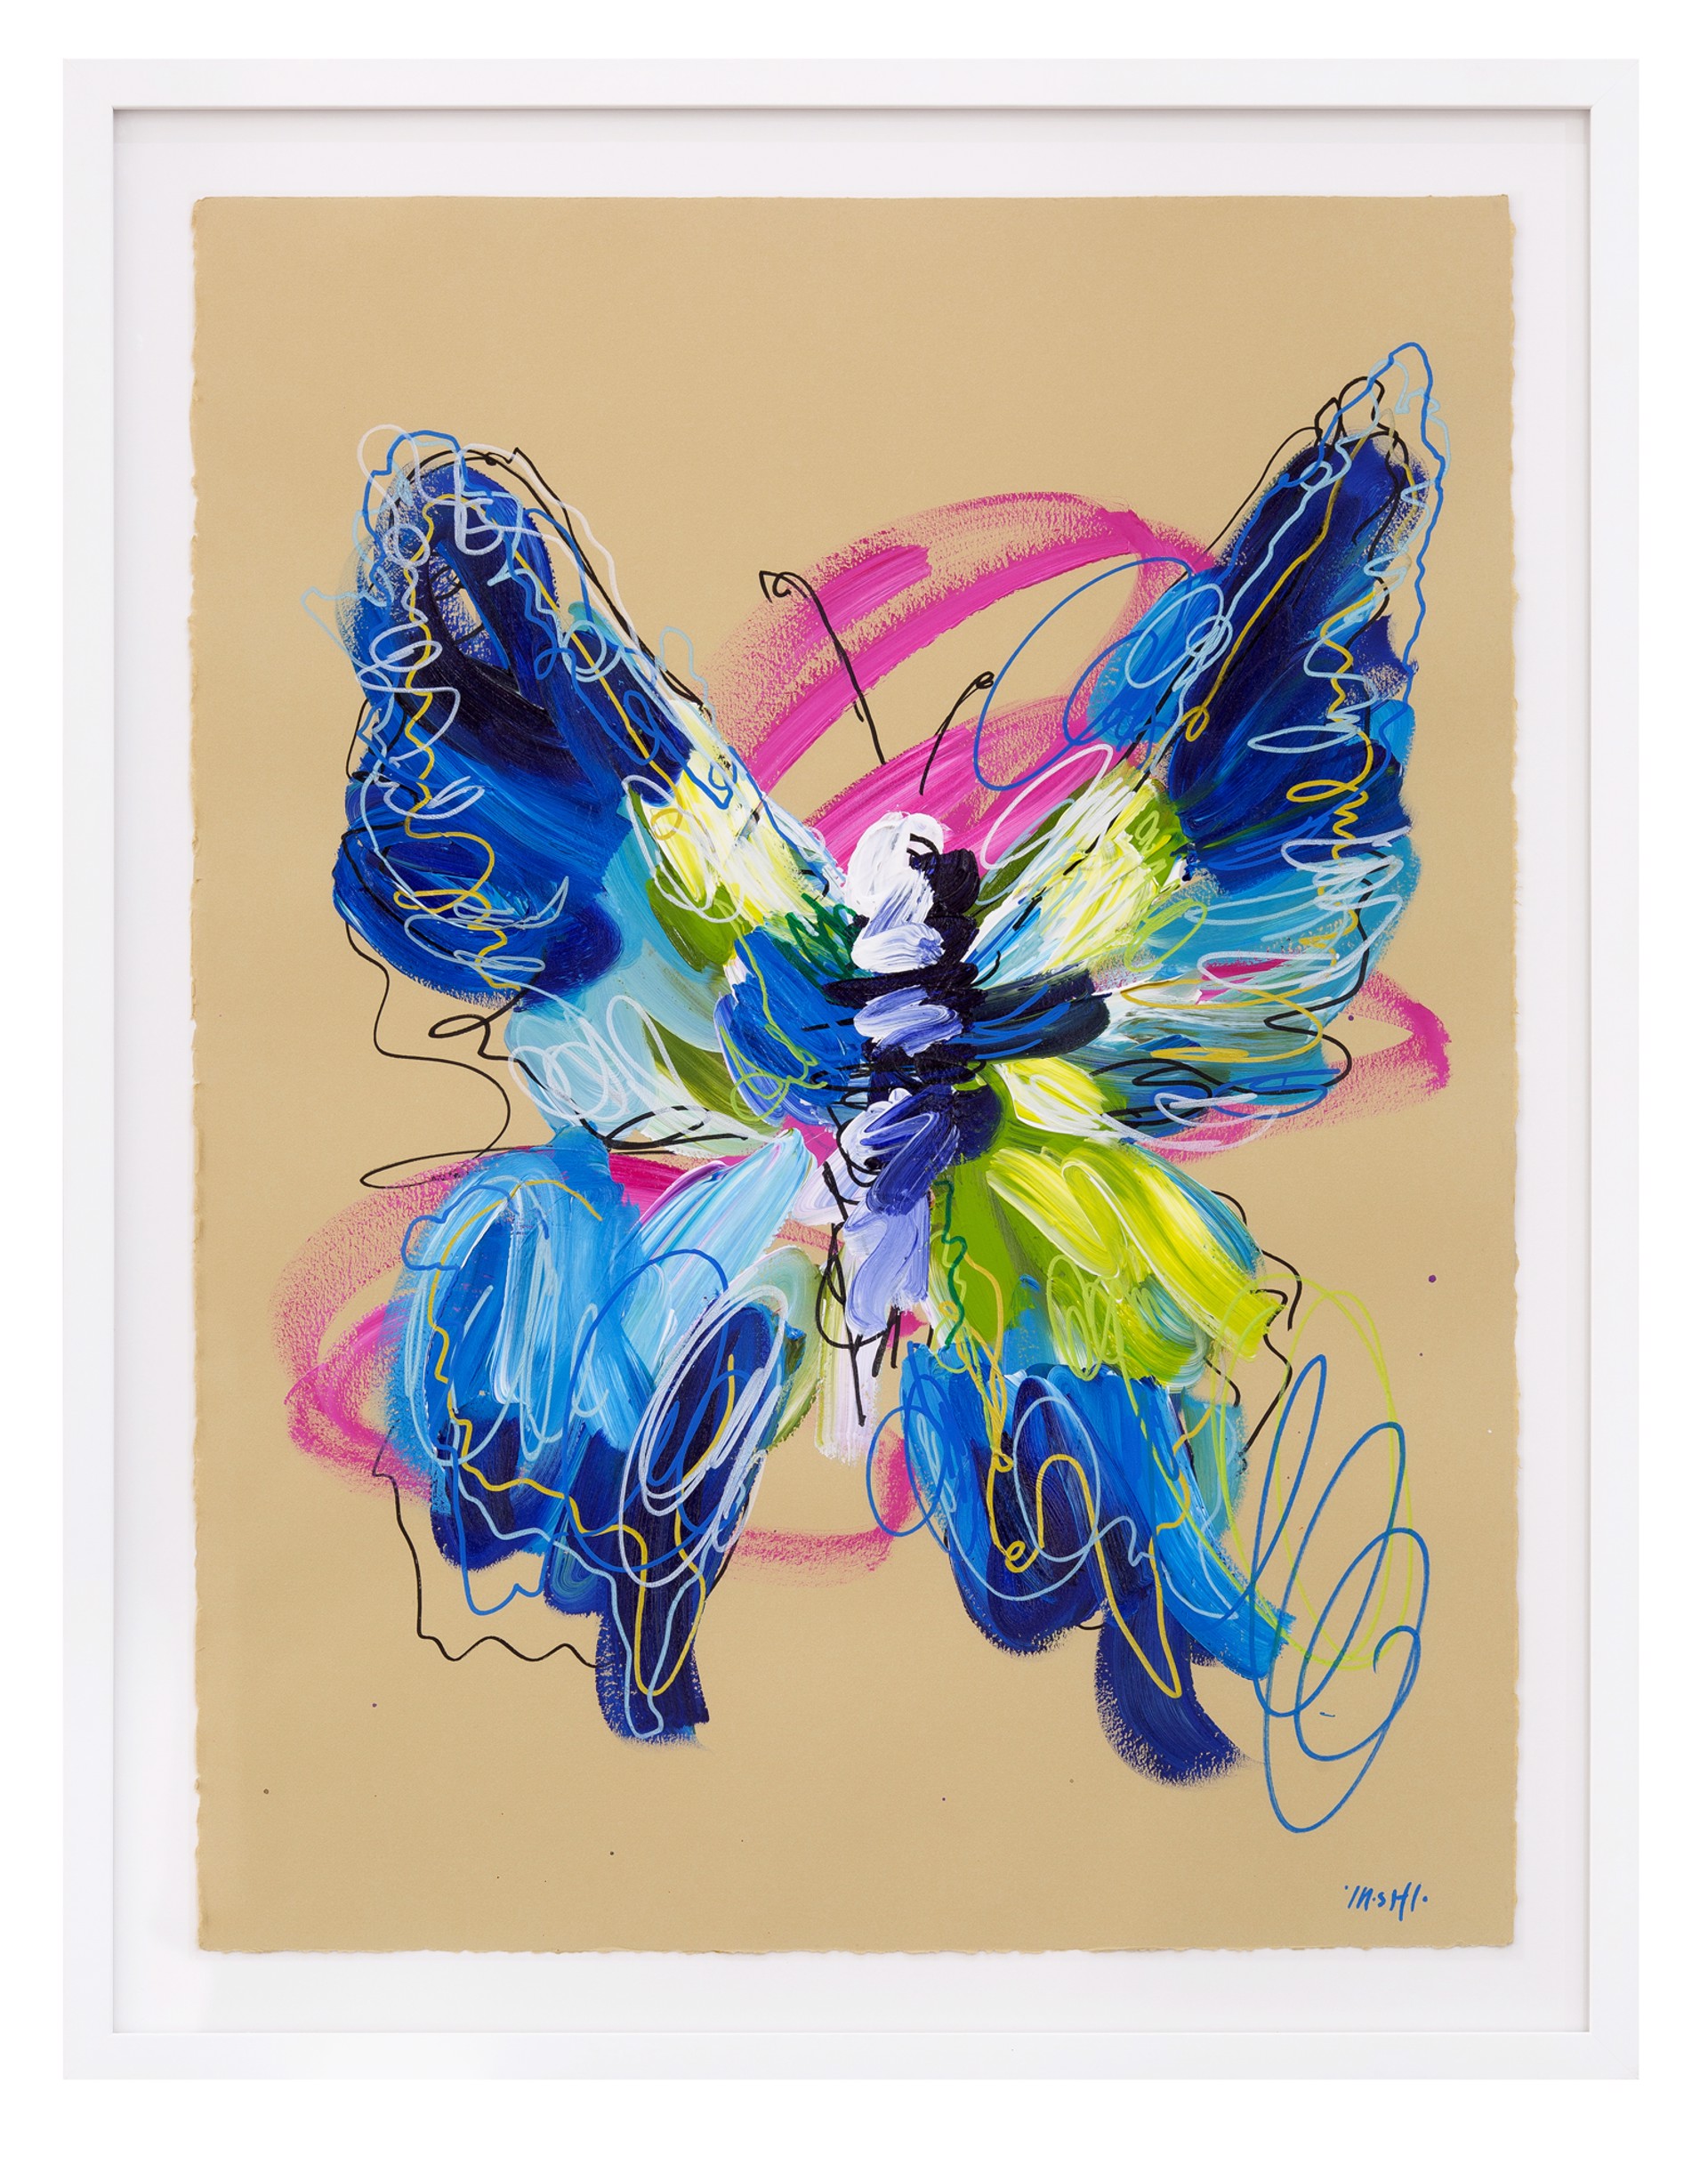 Blue scribble butterfly & pink swirls by Ash Almonte